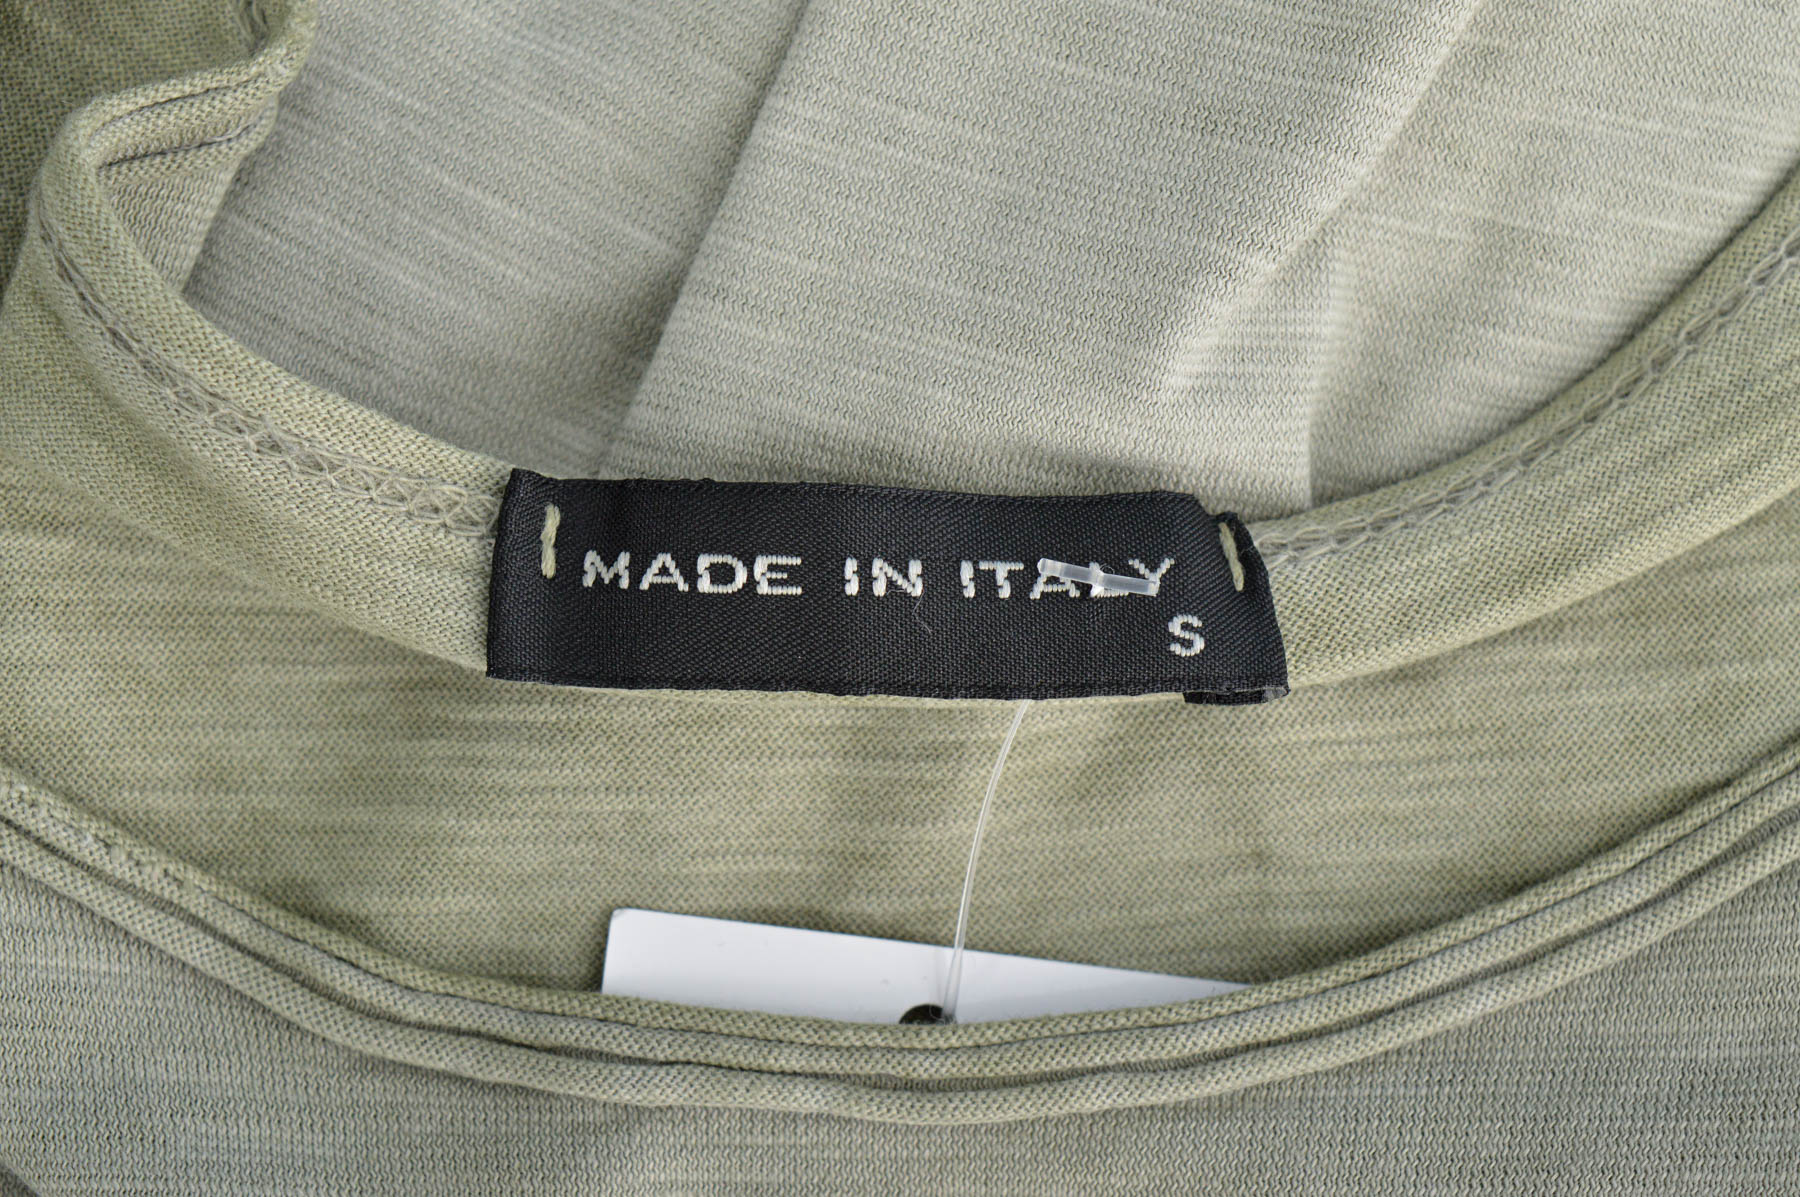 Αντρική μπλούζα - Made in Italy - 2